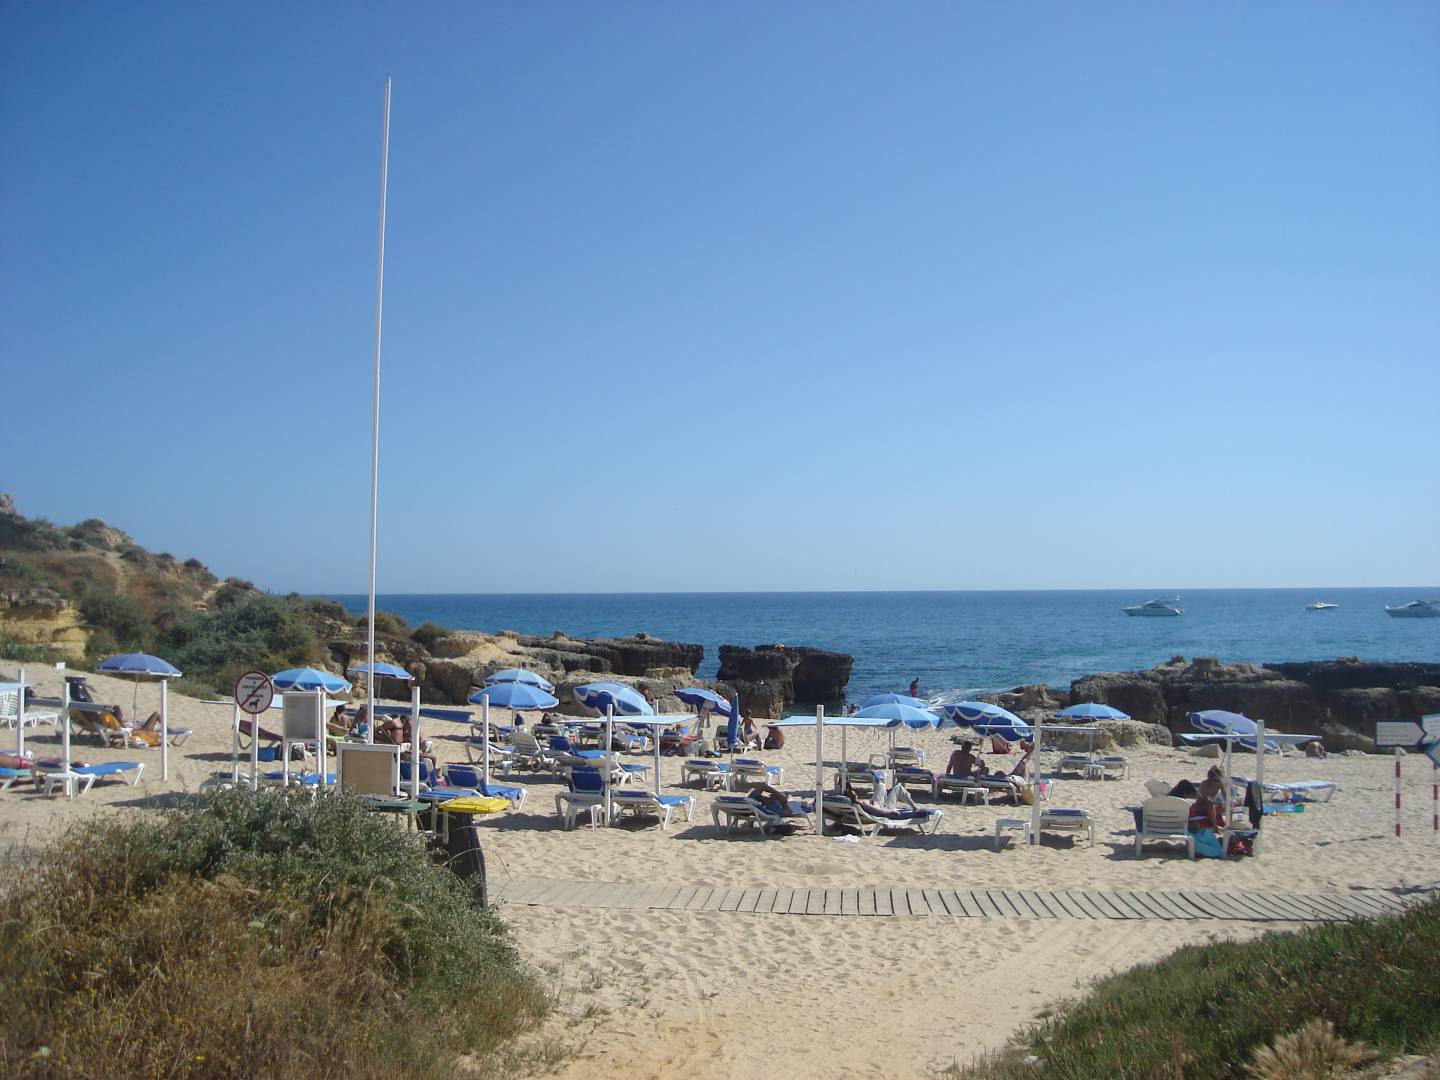 Praia do Evaristo - Albufeira | All About Portugal